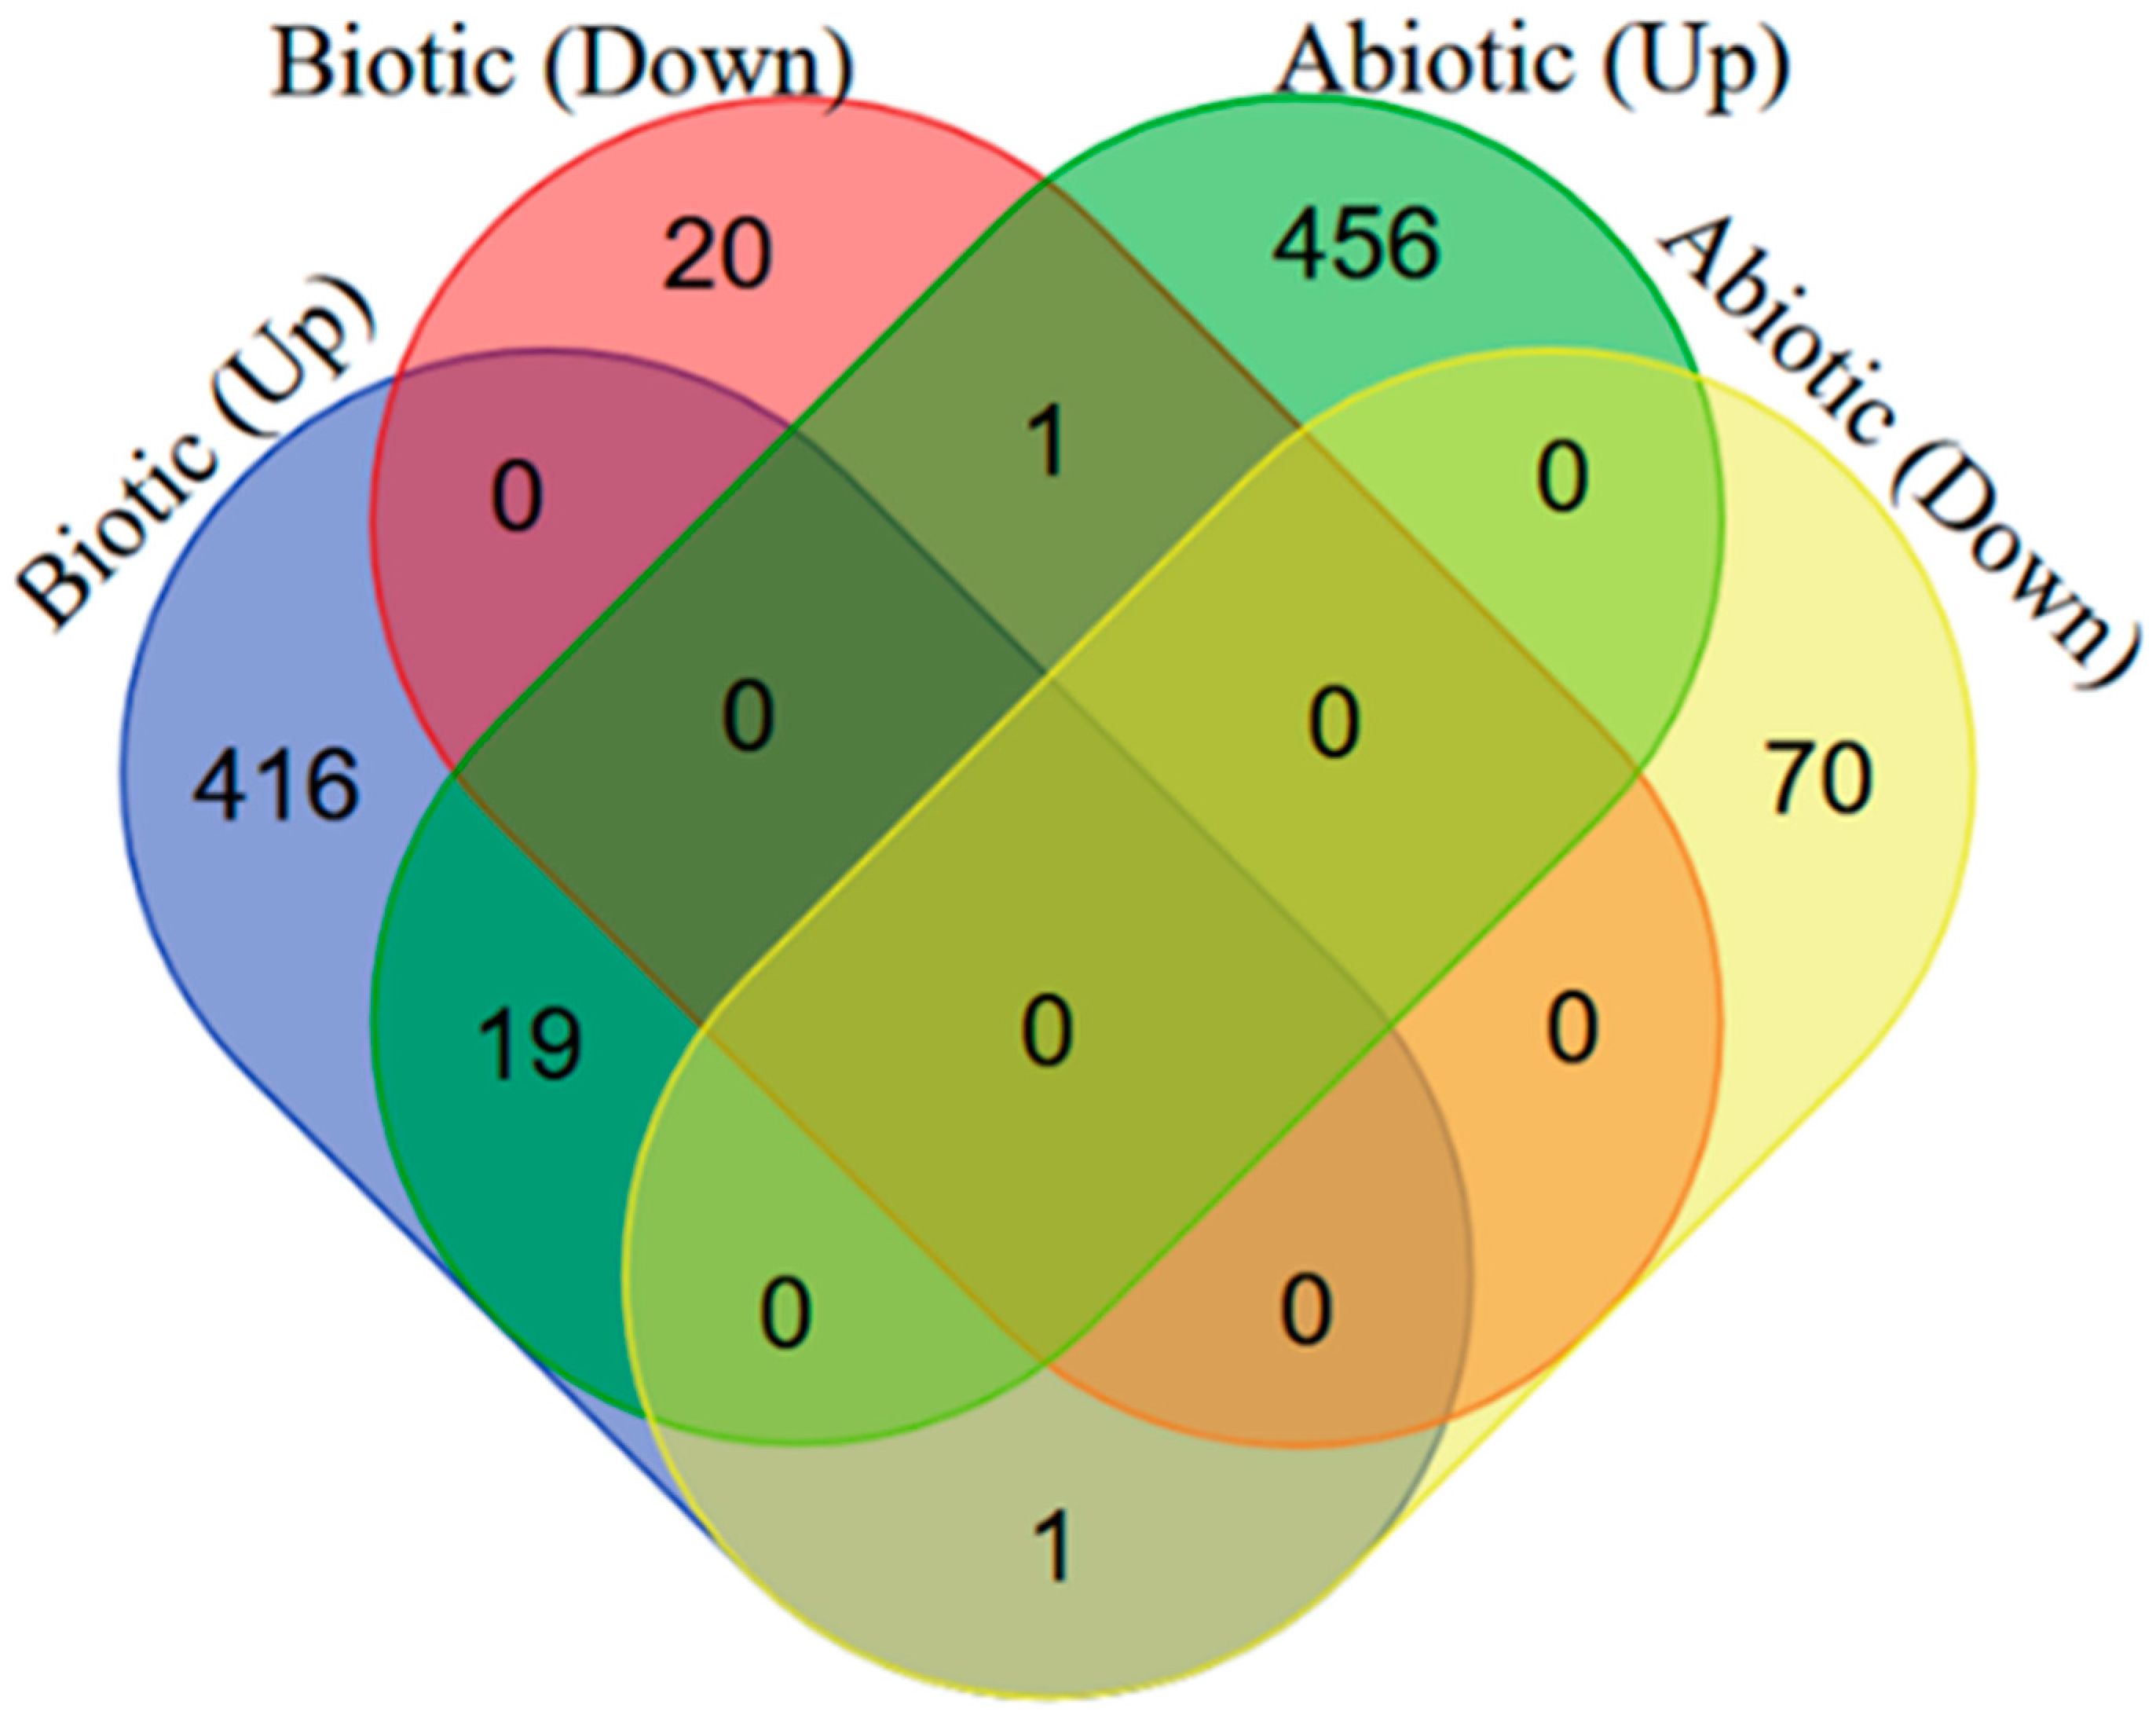 biotic and abiotic venn diagram